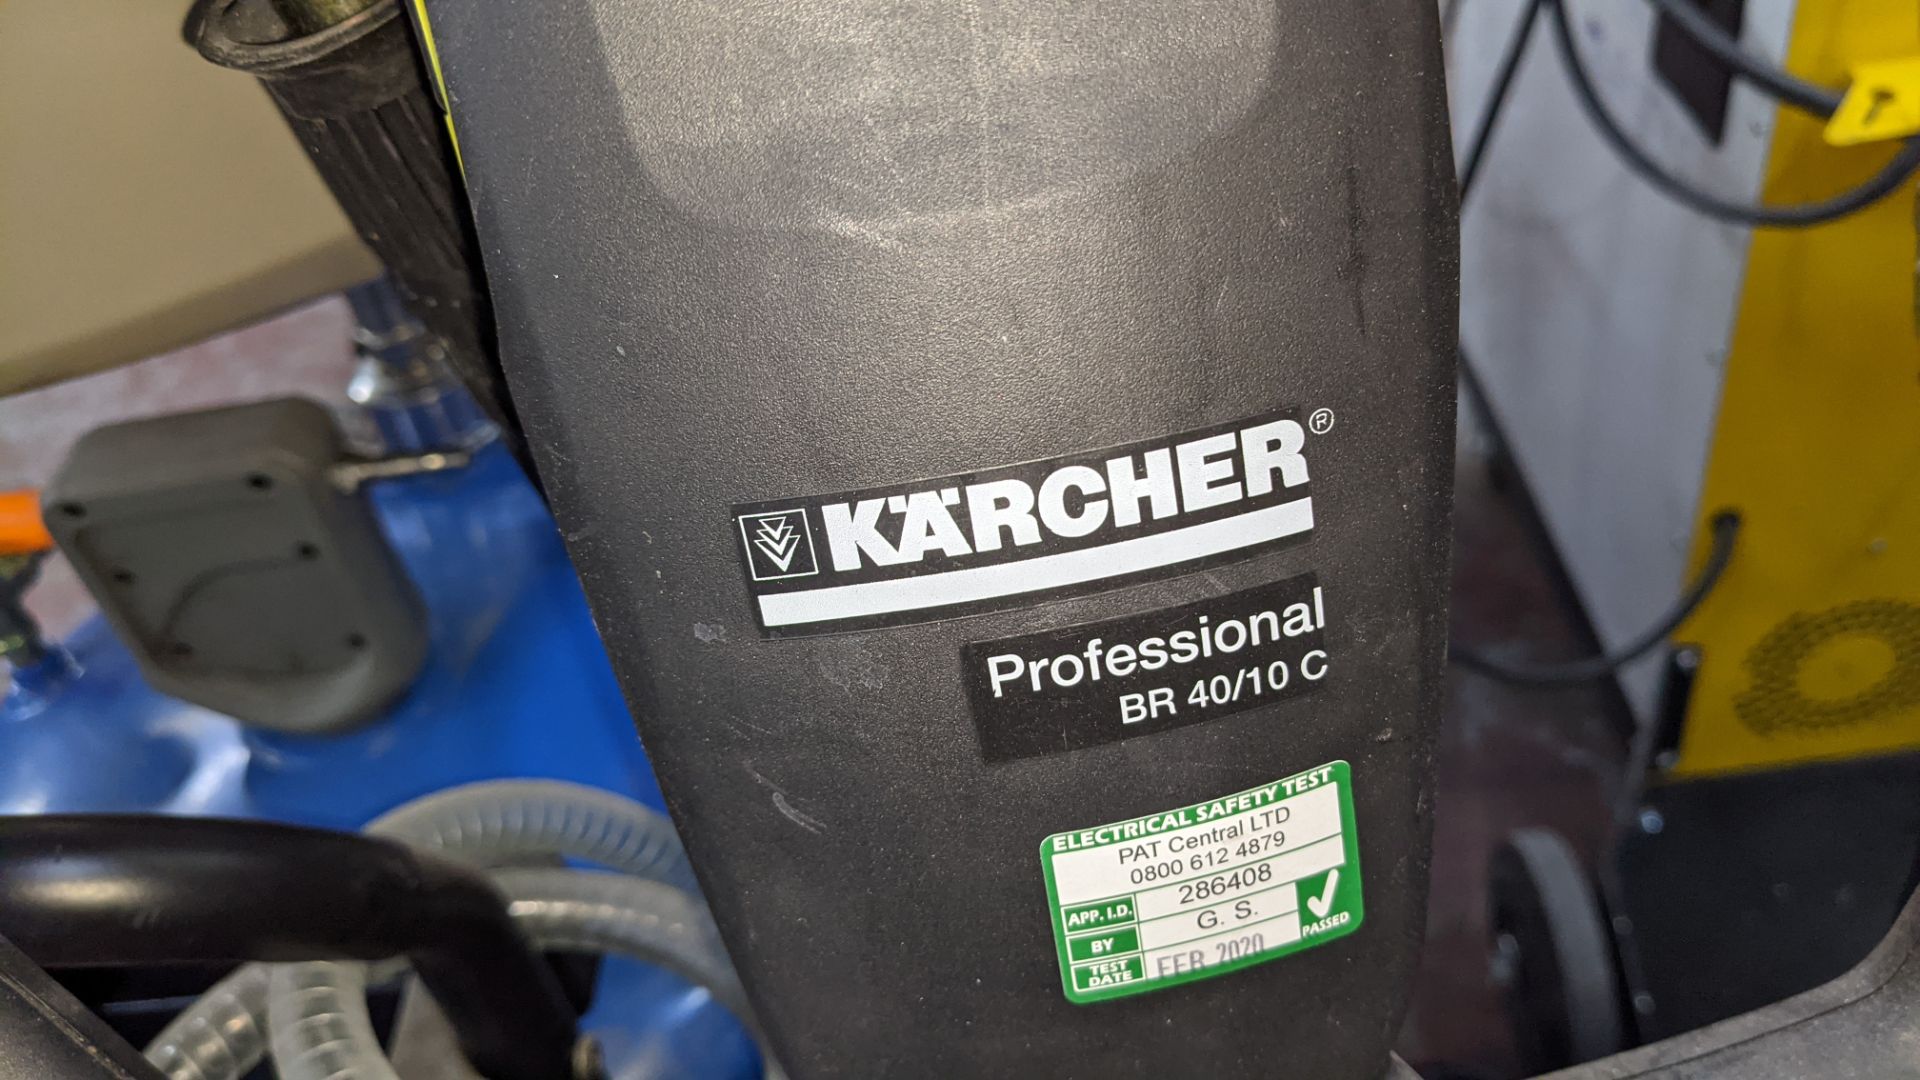 Karcher Professional BR40/10C floor scrubber cleaner - Image 5 of 8